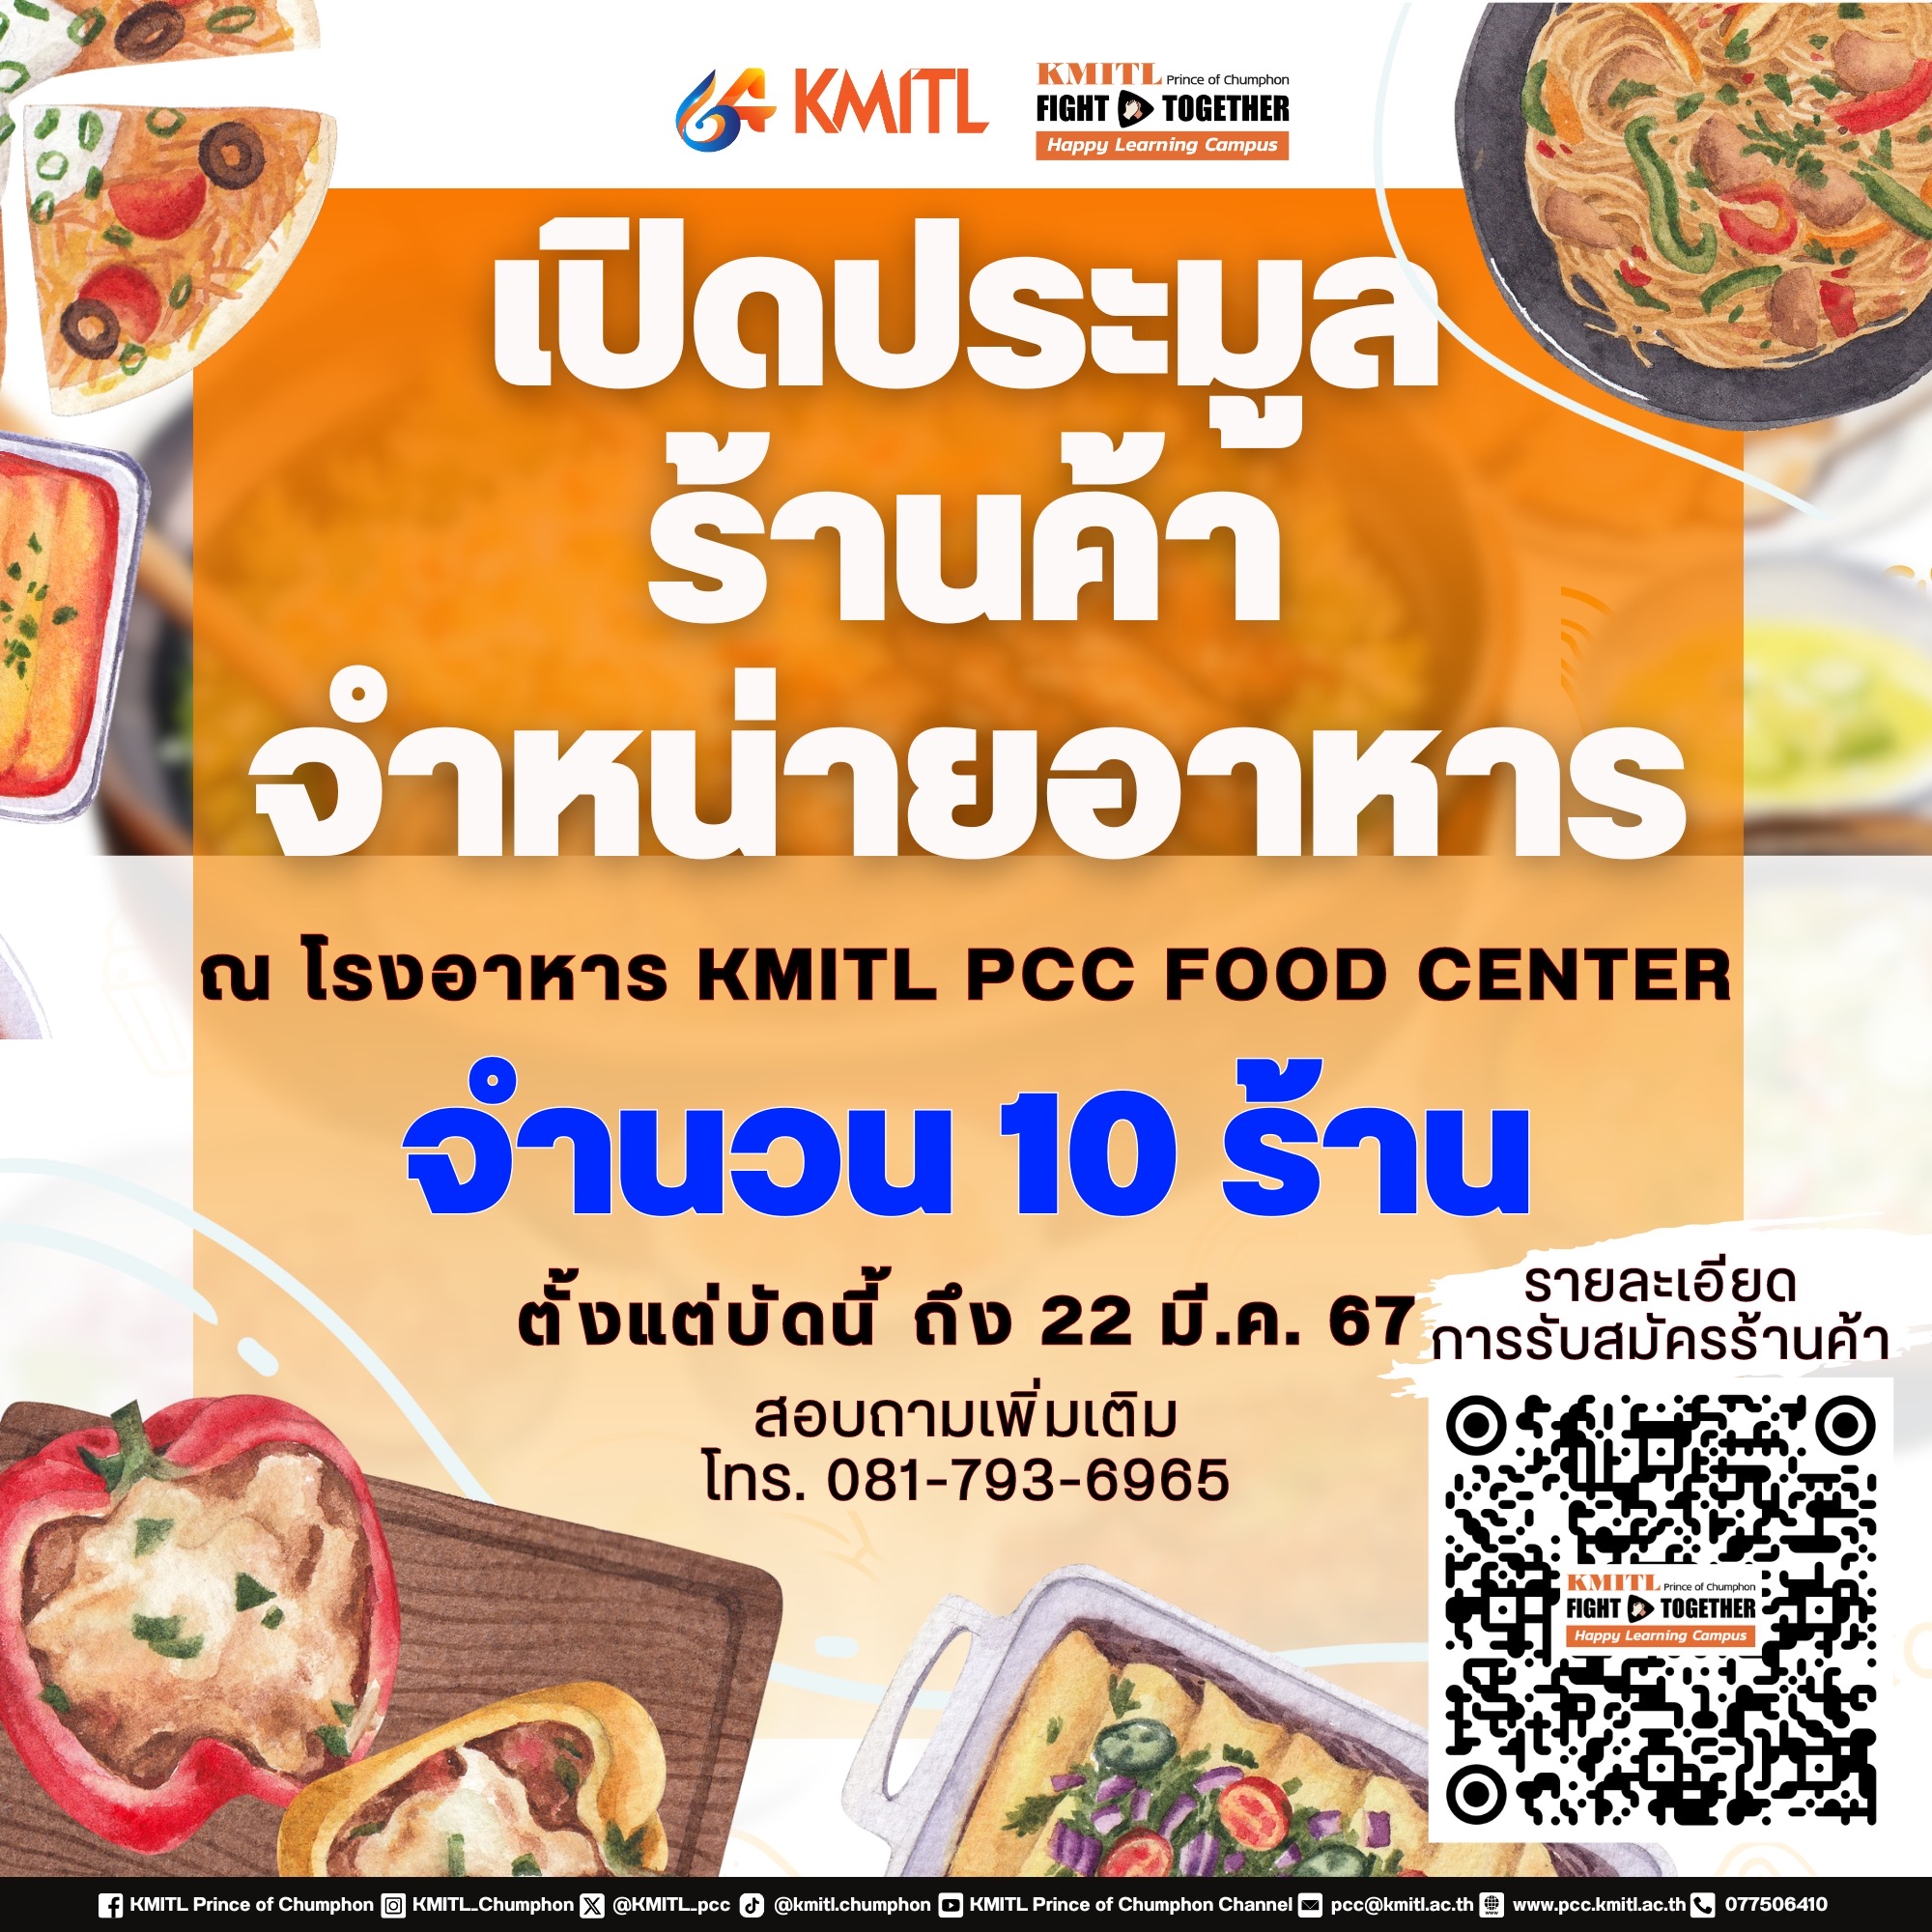 ประกาศประมูลร้านค้าจำหน่ายอาหาร โรงอาหาร KMITL PCC Food Center